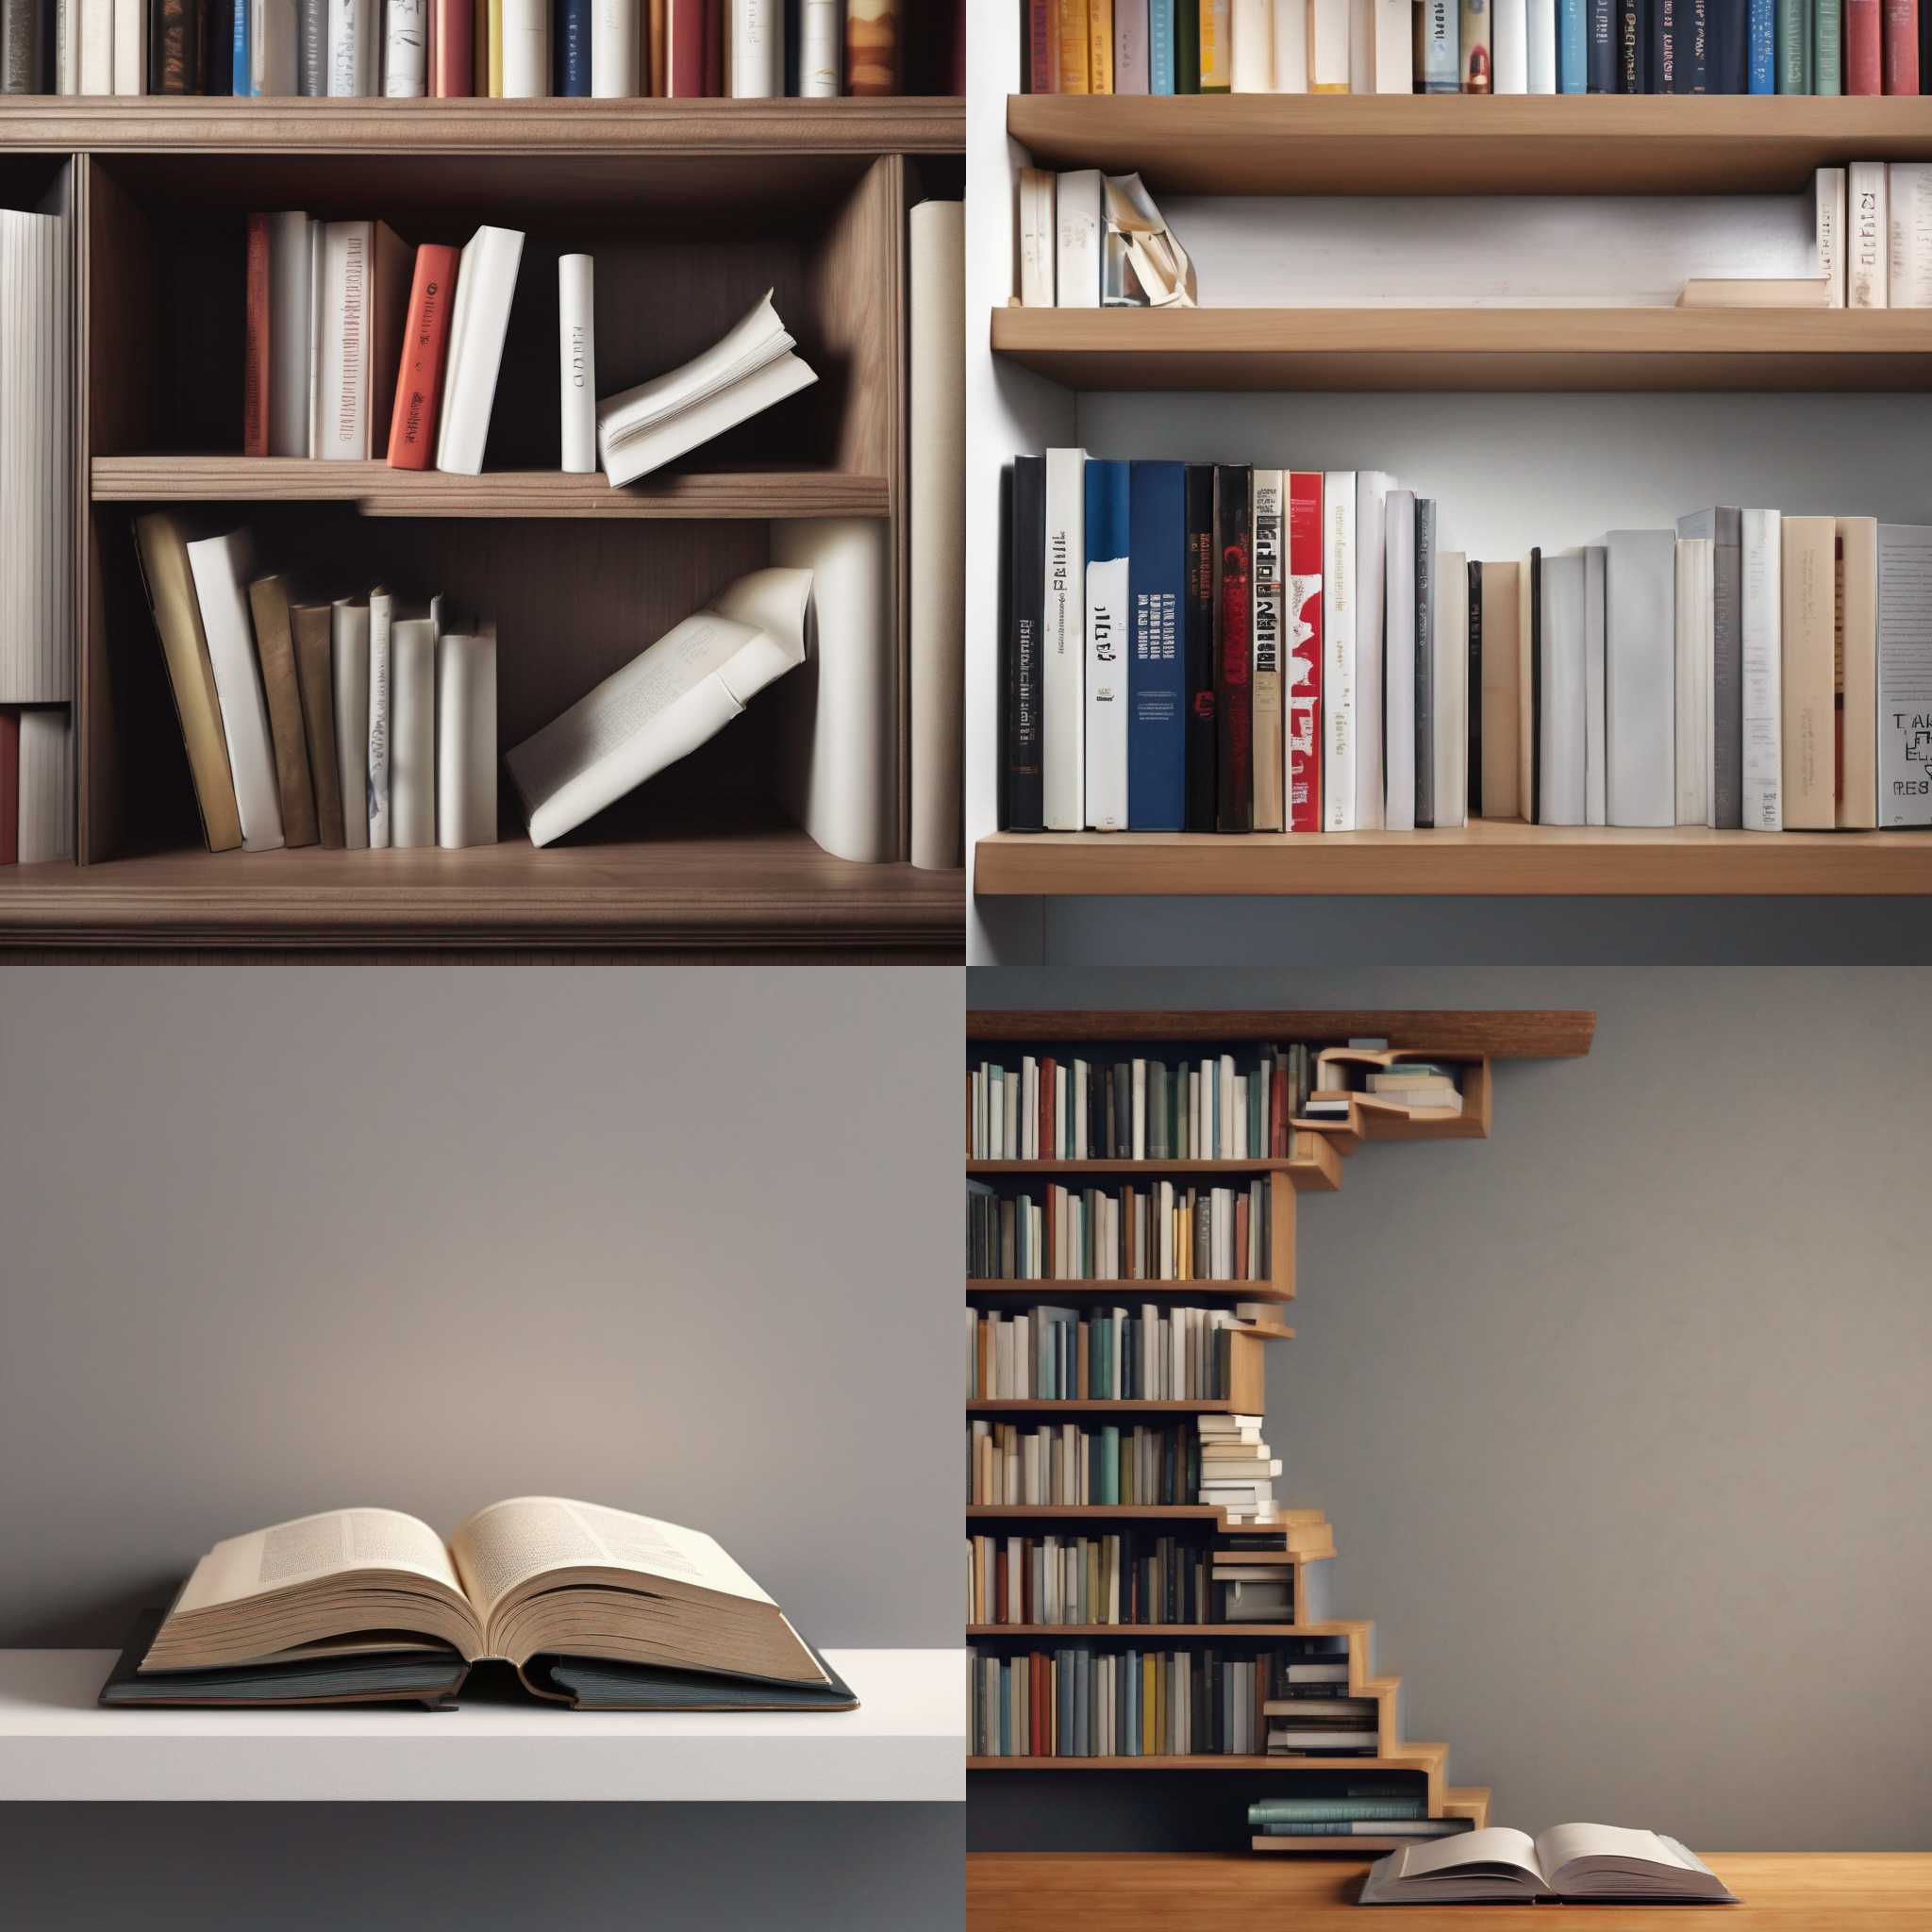 A book on an uneven shelf